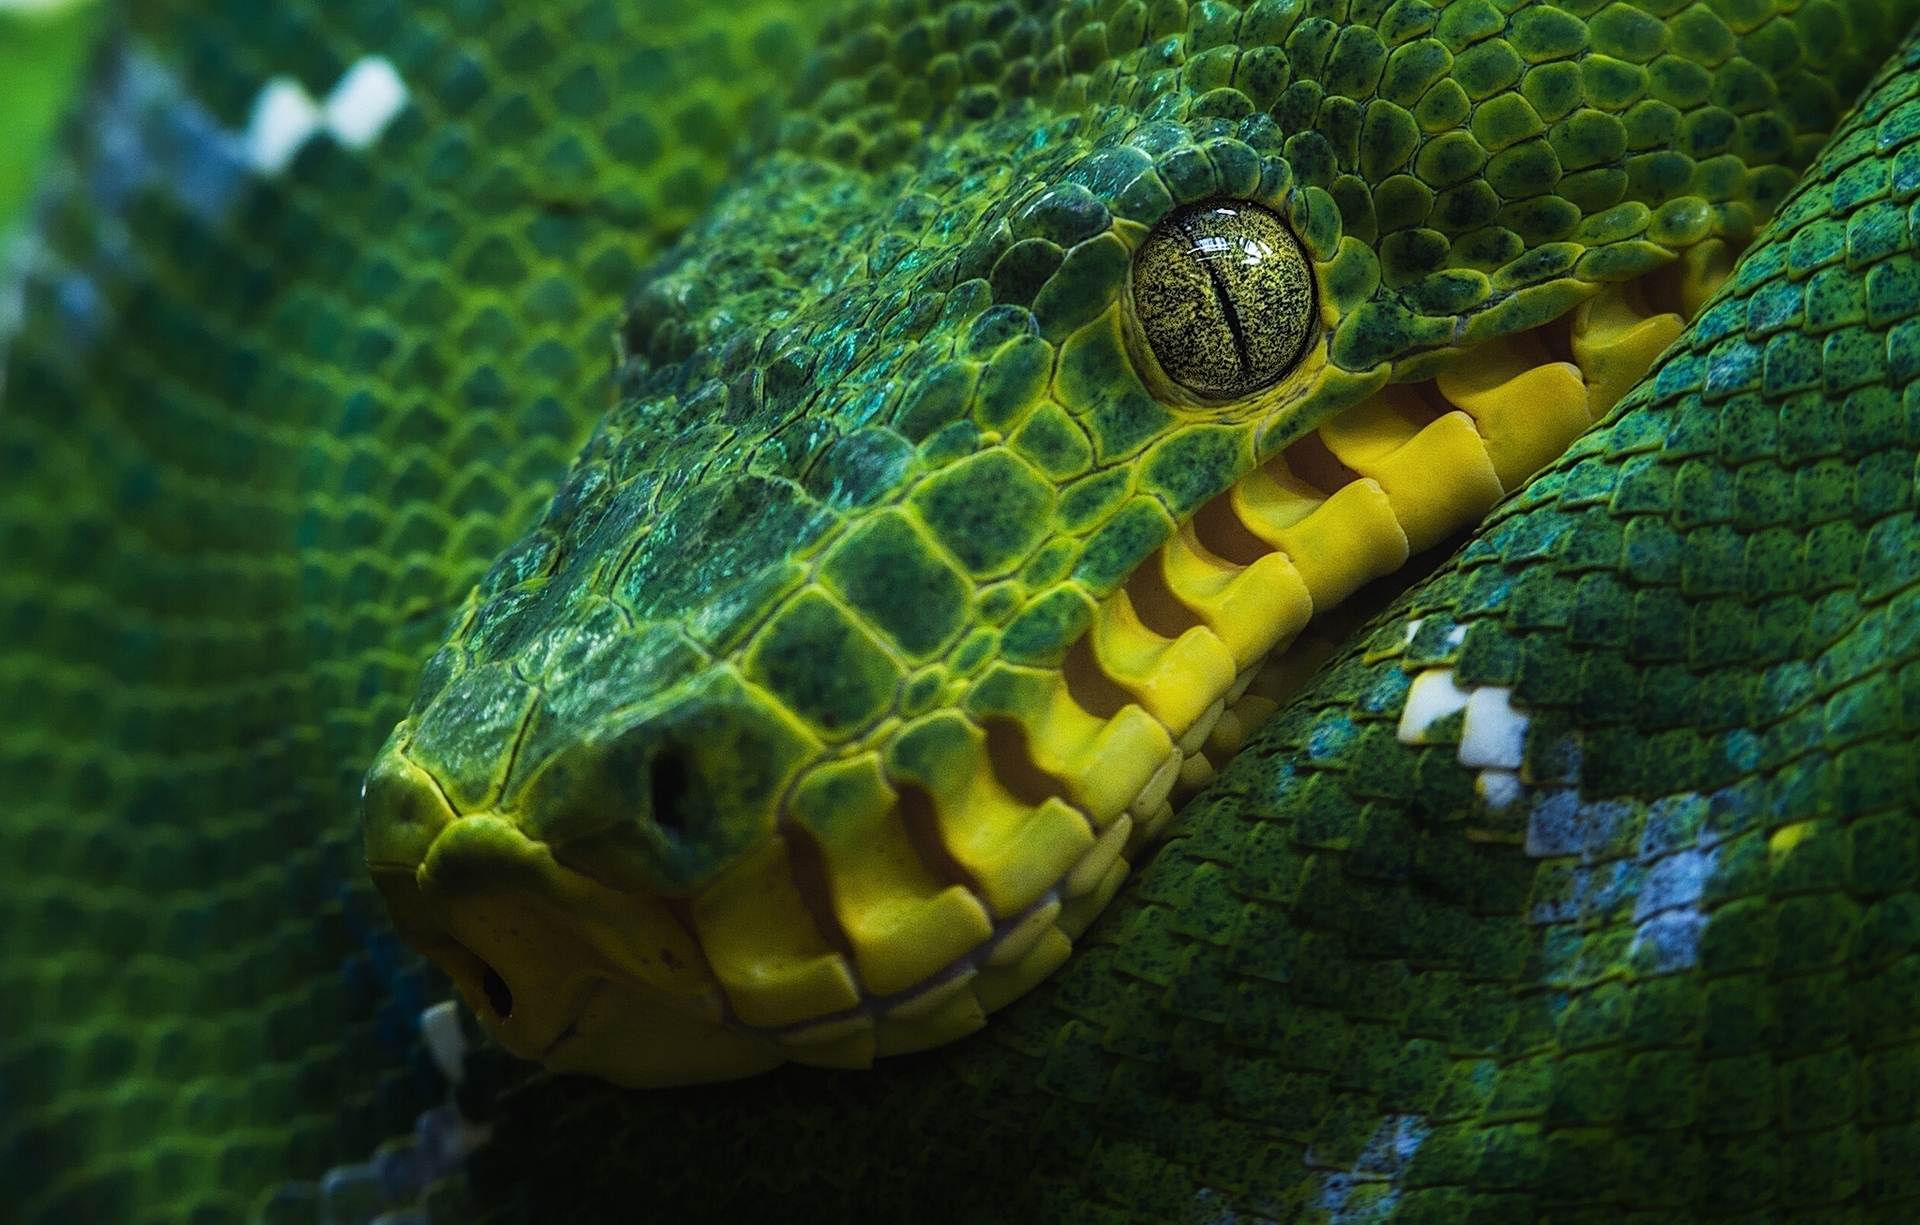 schlangentapete full hd,reptil,schlange,schlange,python familie,grün